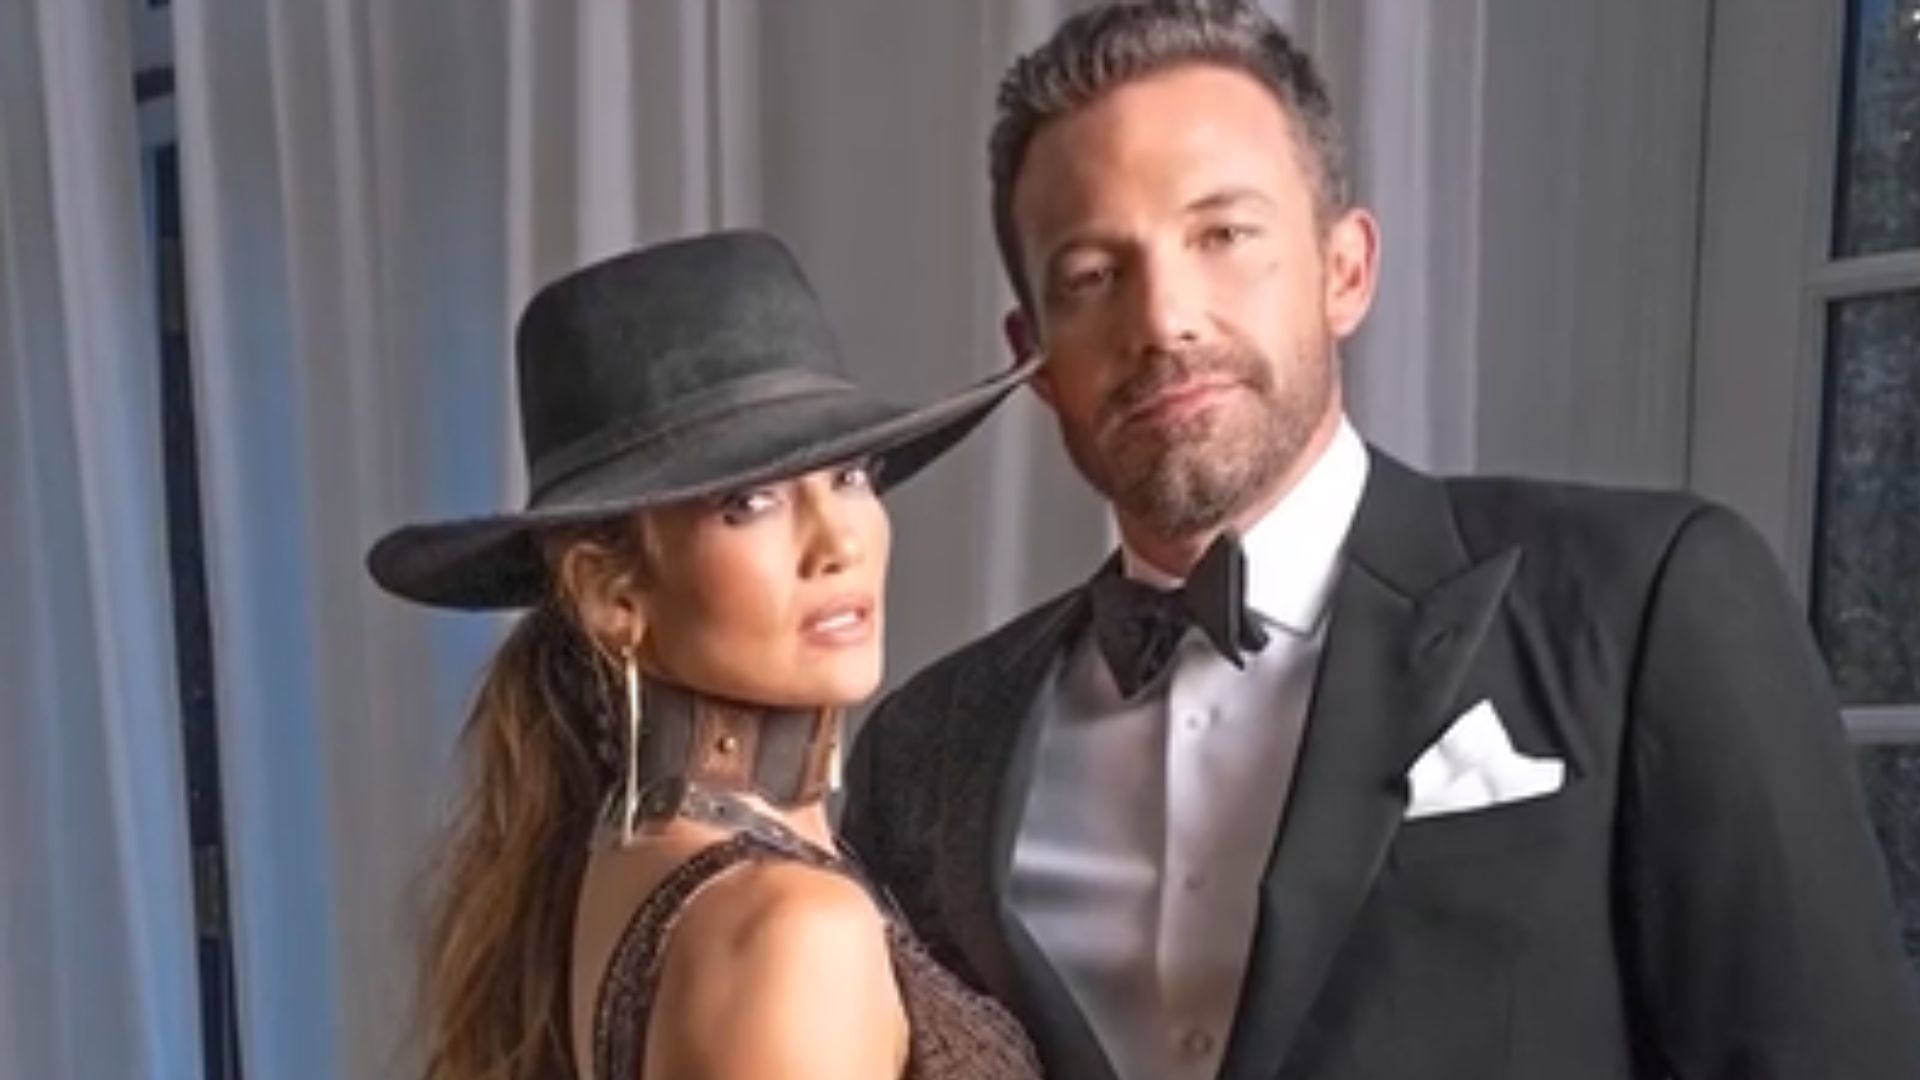 Comportamento de Jennifer Lopez é responsável por crise no casamento com Ben Affleck, diz jornal - ISTOÉ Independente